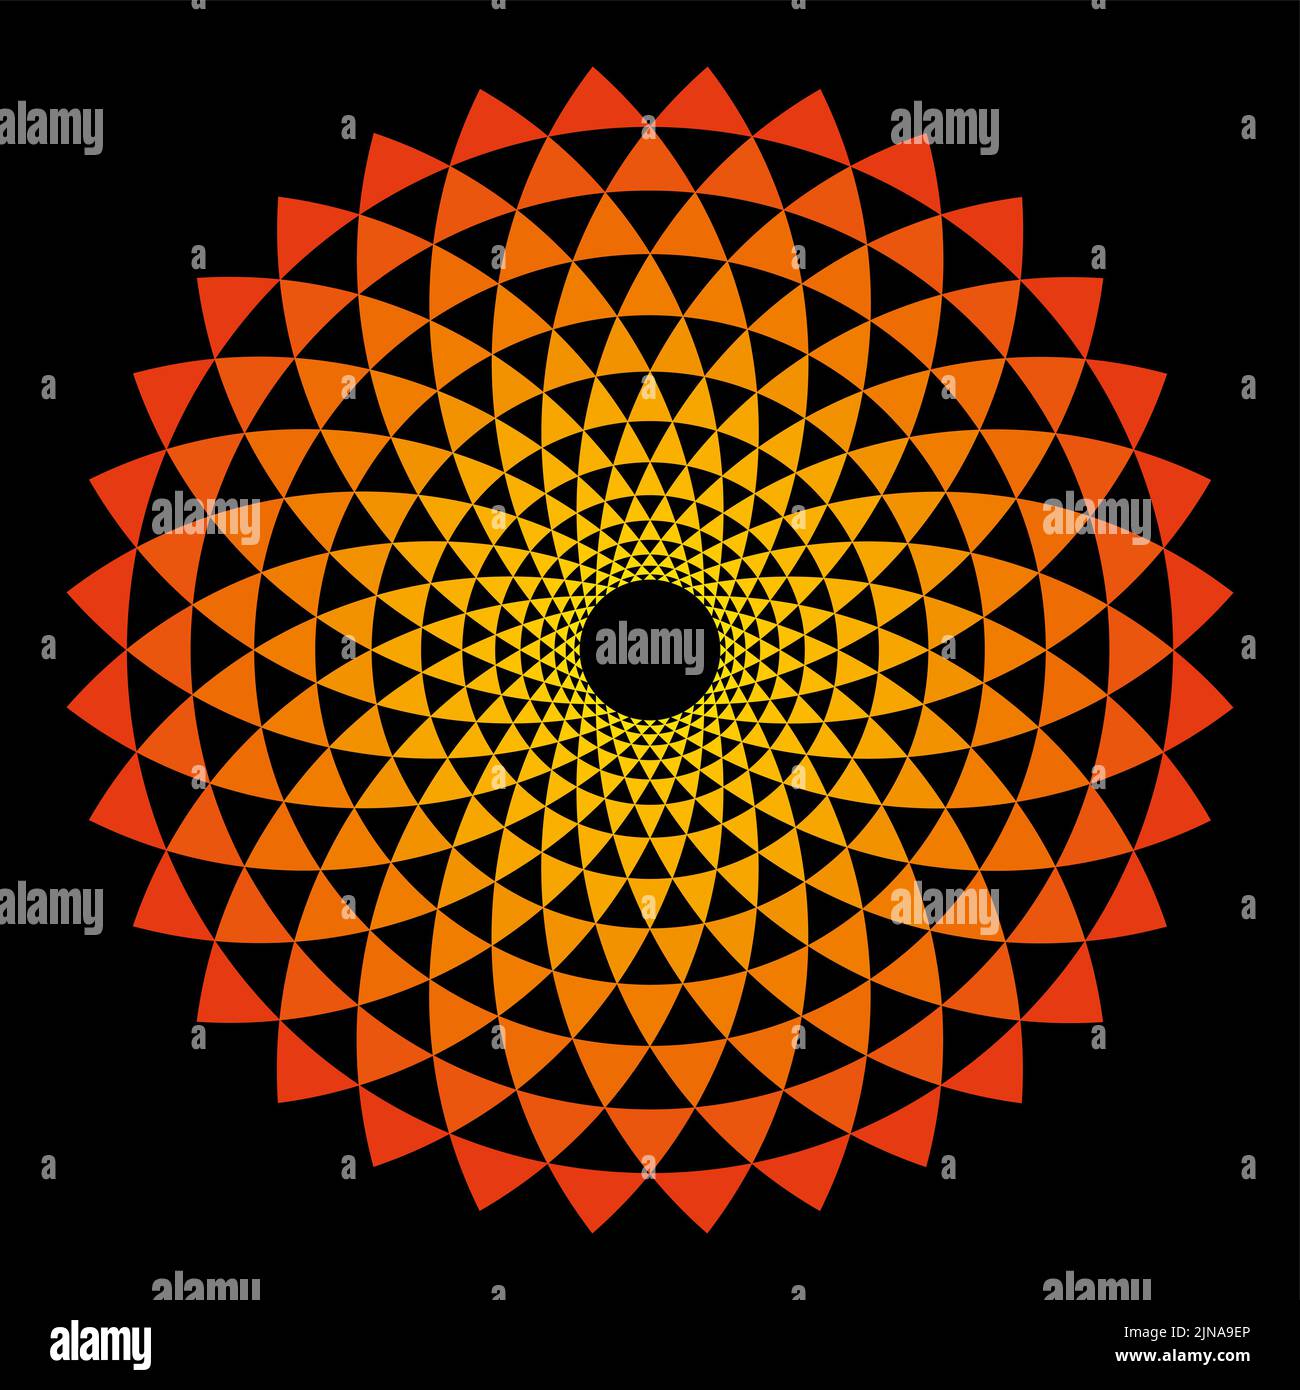 Sonnensymbol aus Fibonacci-Muster. Bögen, spiralförmig angeordnet, von Kreisen durchzogen, wodurch Biegedreiecke entstehen. Stockfoto